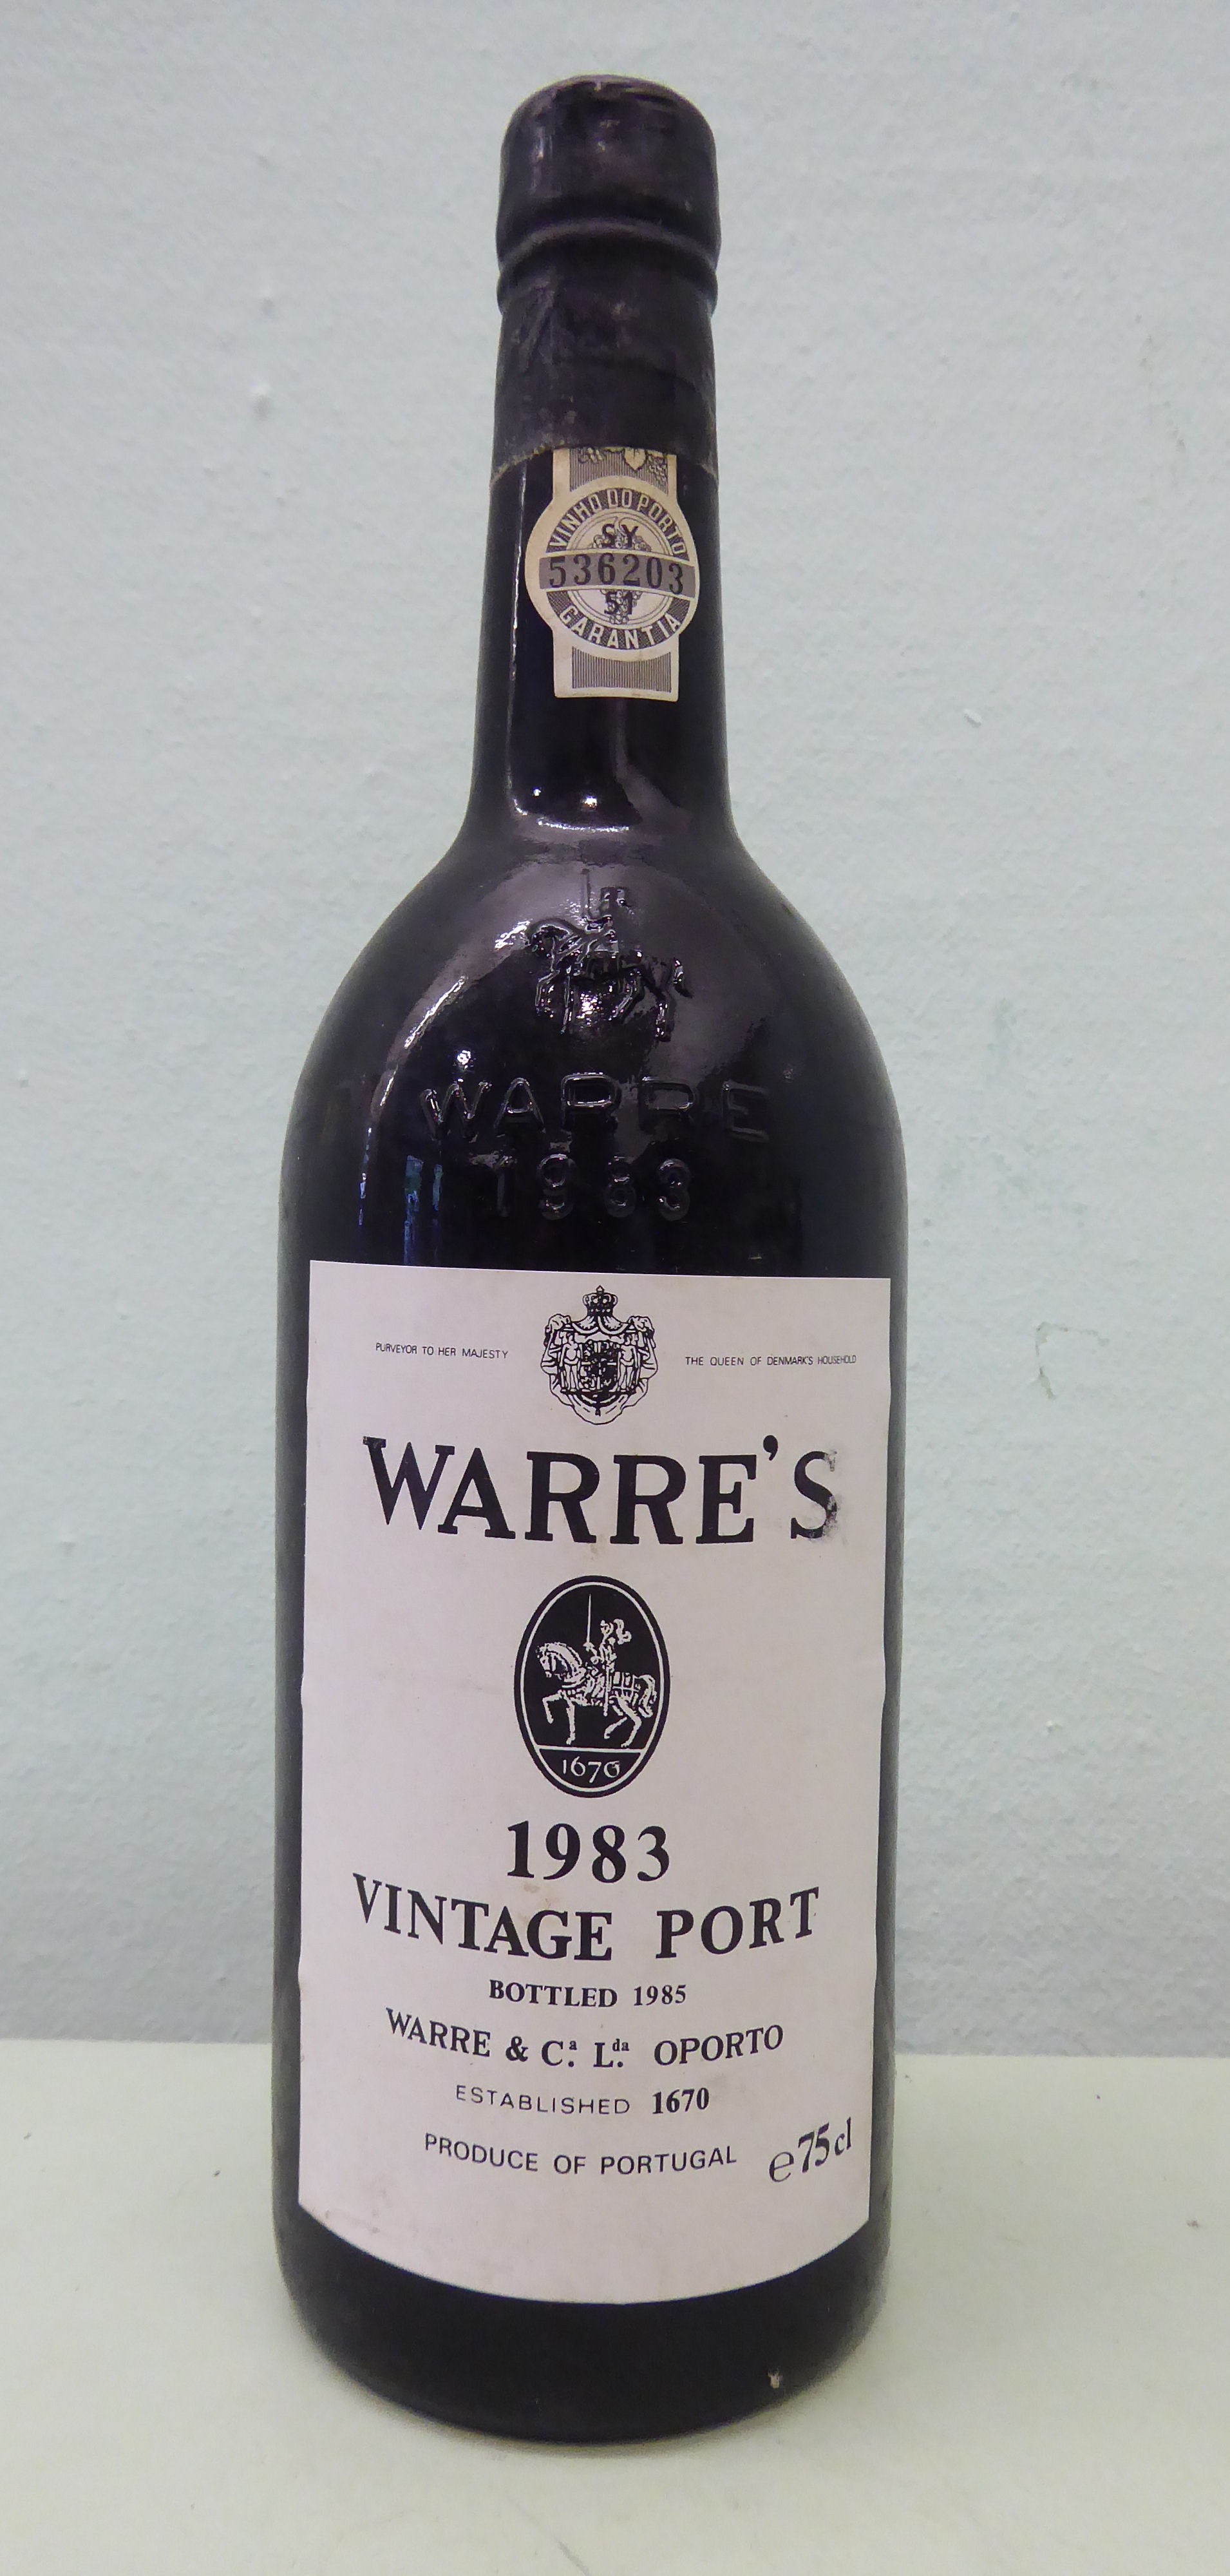 A bottle of Warre's 1983 Vintage Port